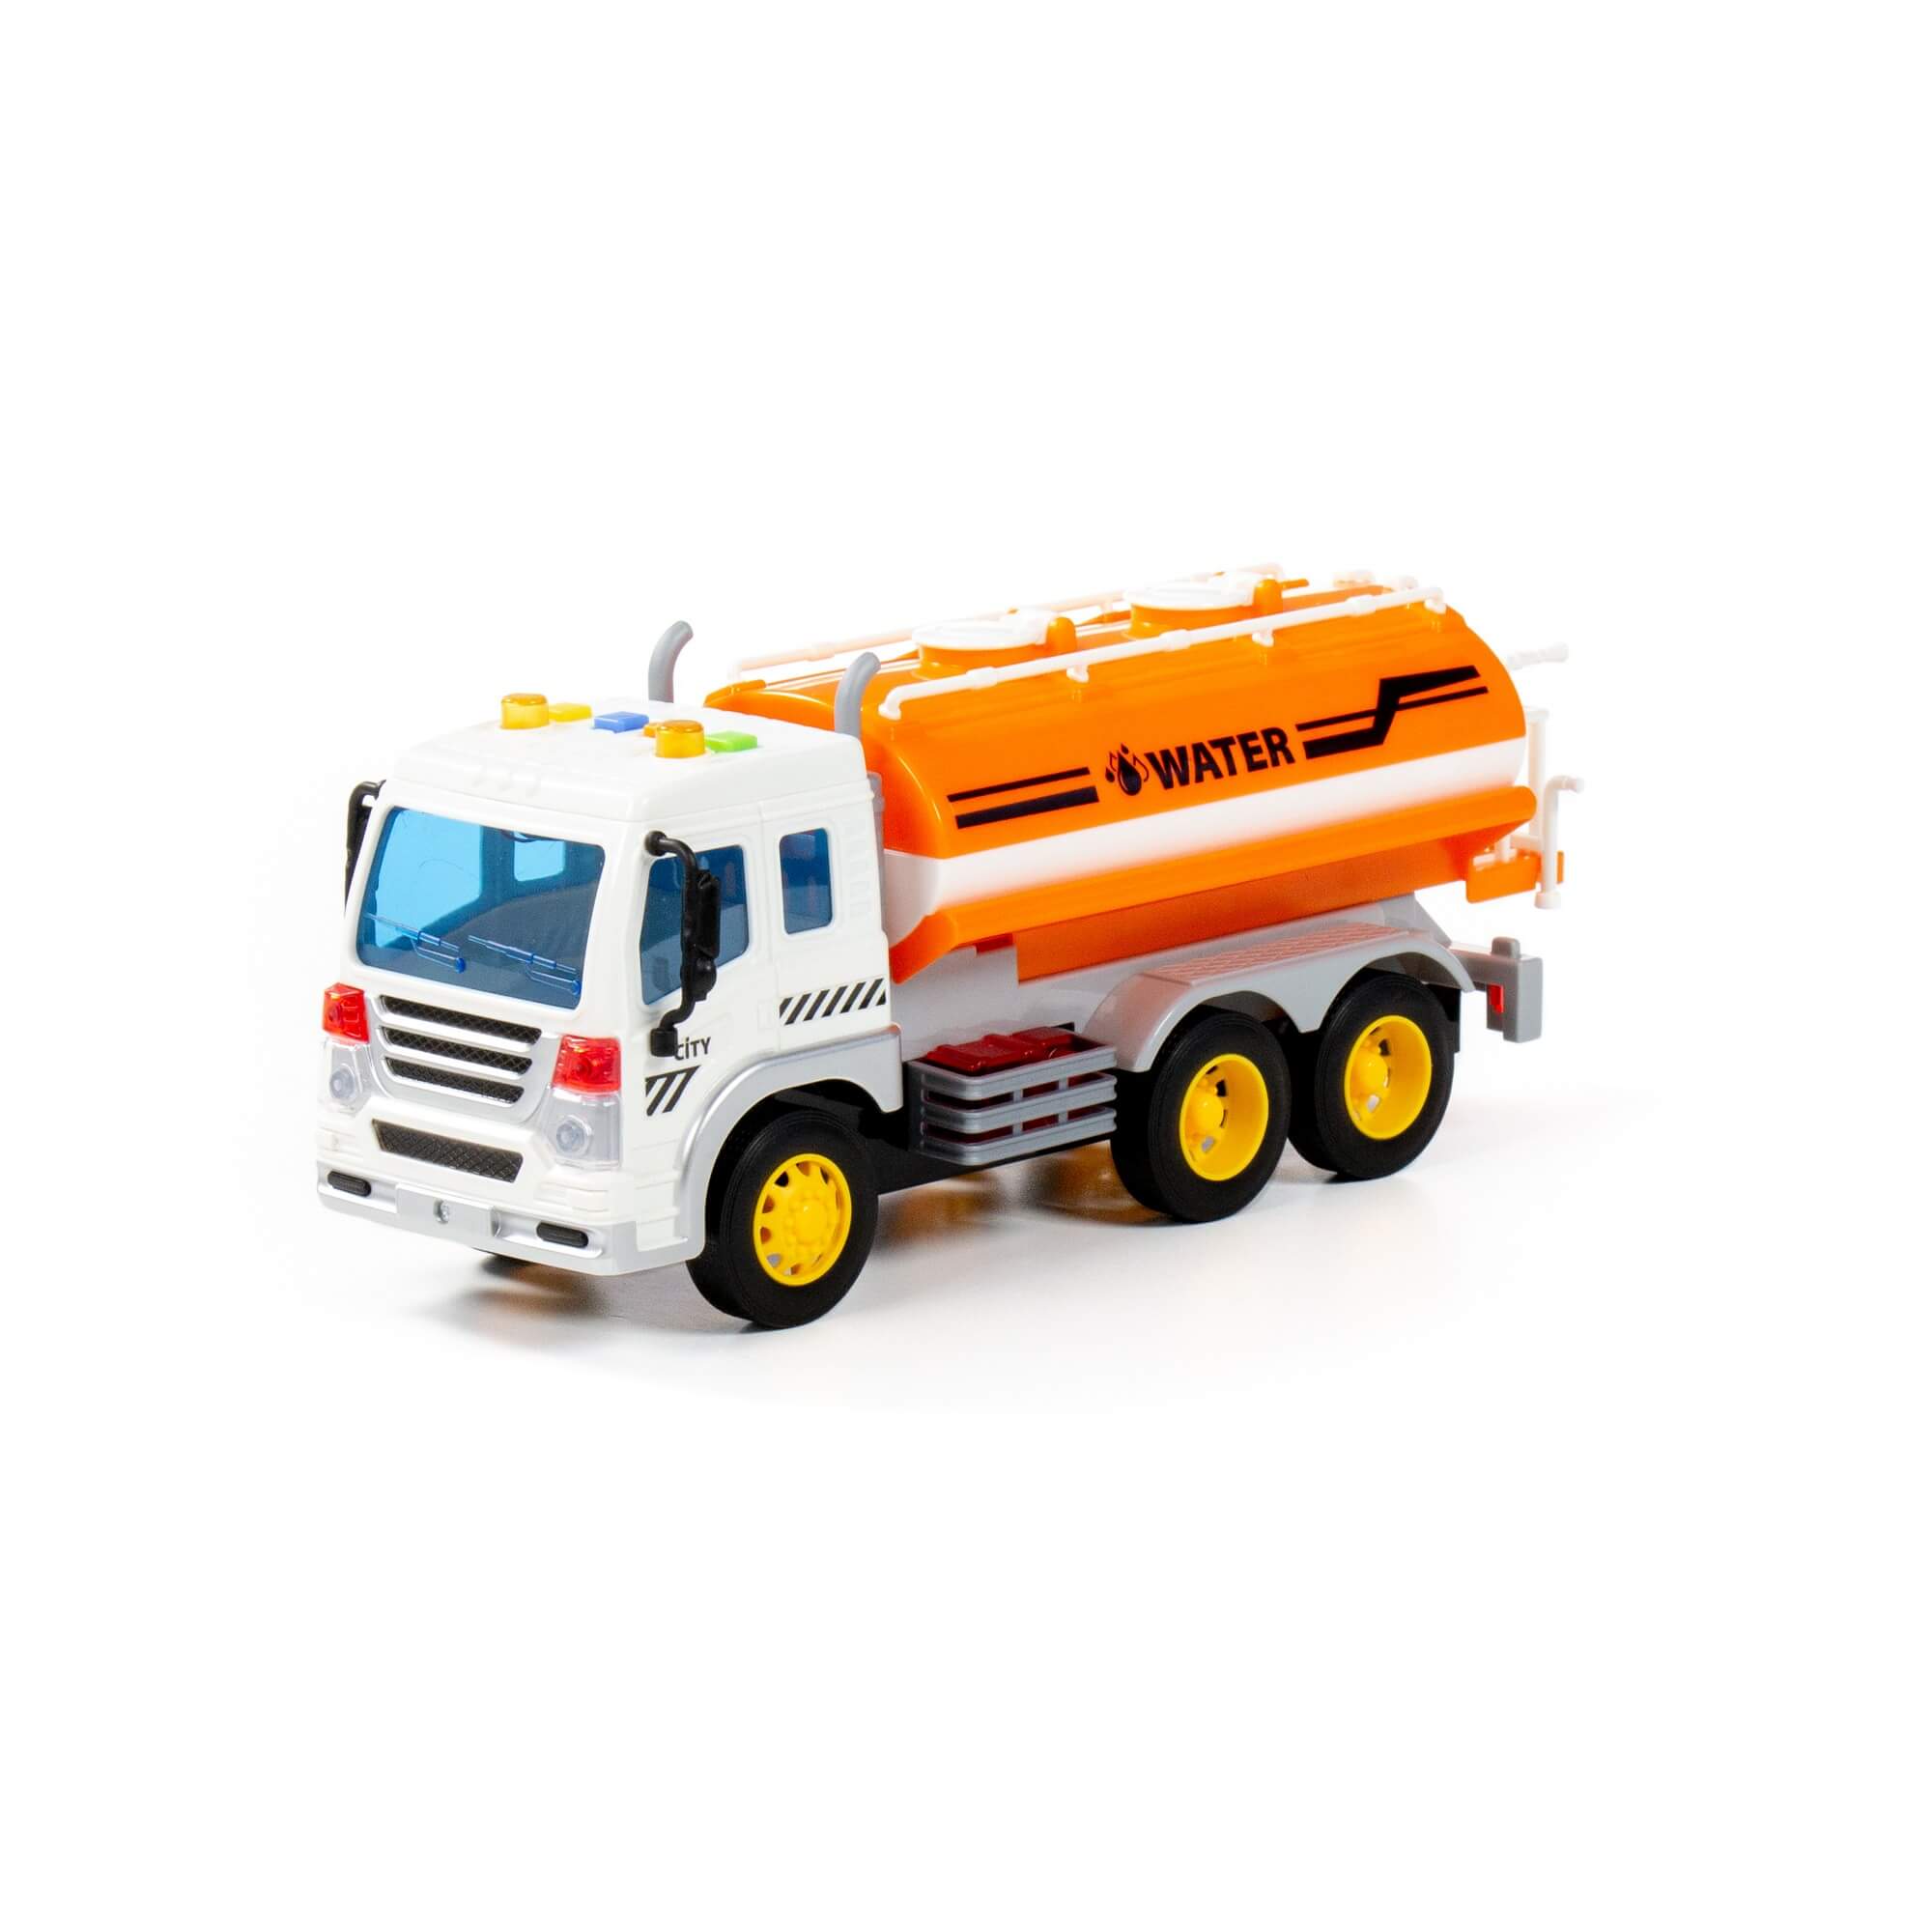 Игрушка поливочный автомобиль инерционный "Сити" (со светом и звуком) (оранжевый) 